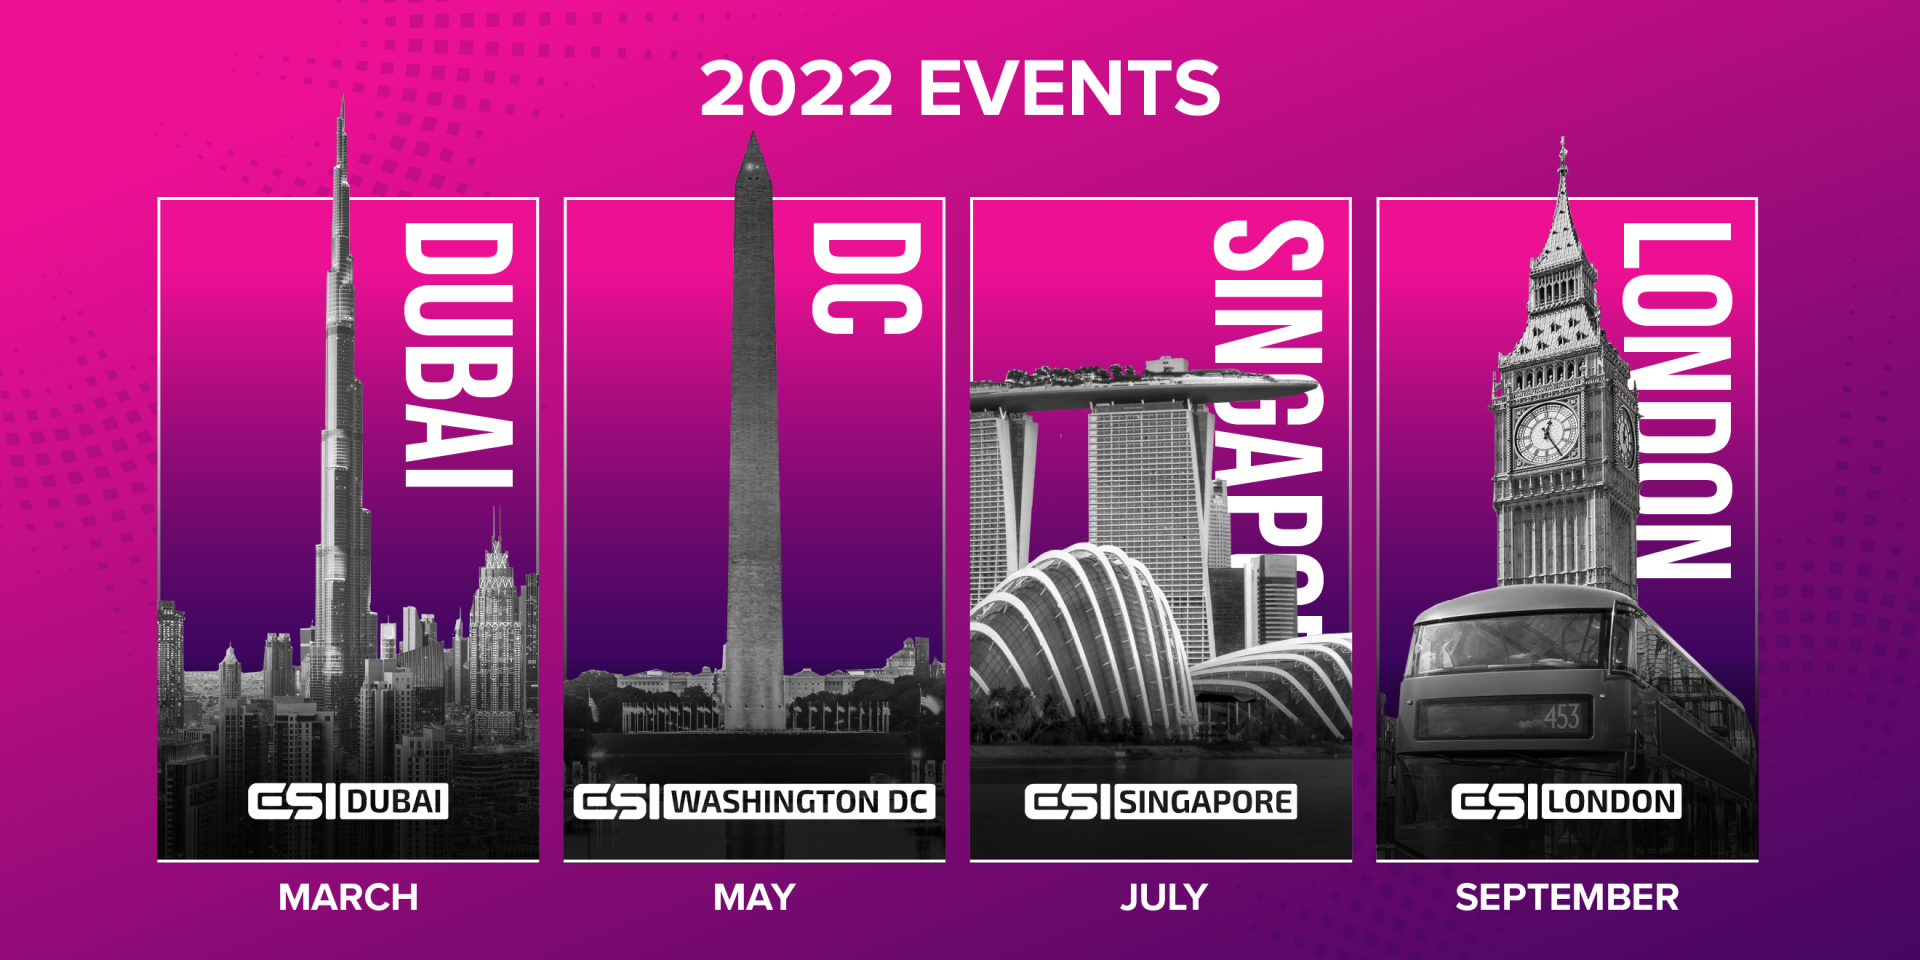 Csi Fall 2022 Calendar Esi Announces 2022 Events Calendar, Dubai, Dc, Singapore, London - Esports  Insider